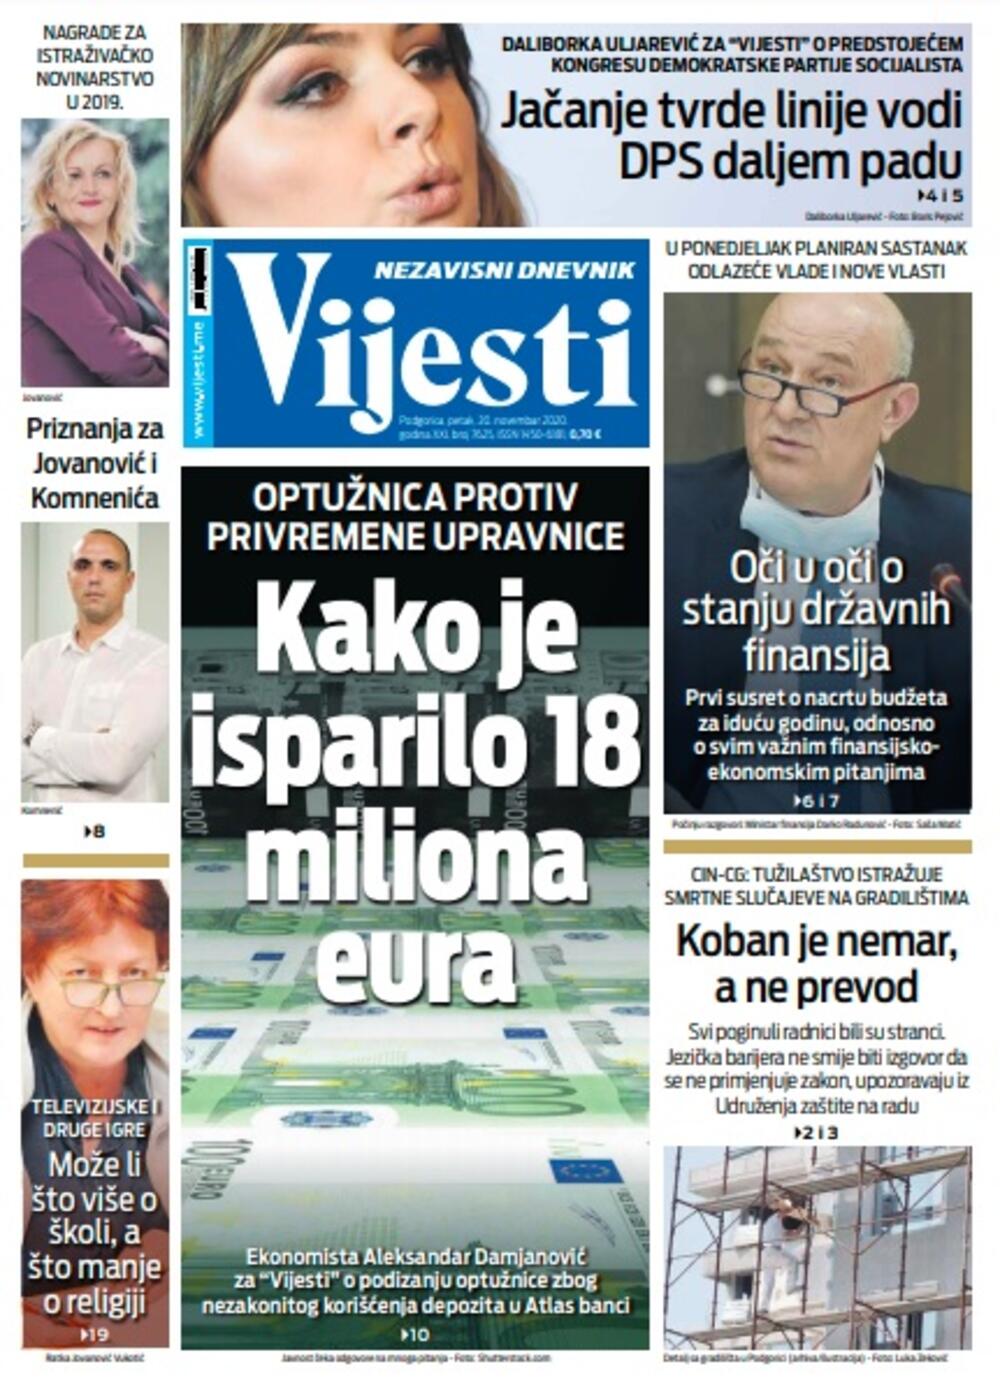 Naslovna strana "Vijesti" za petak 20. novembar 2020. godine, Foto: Vijesti